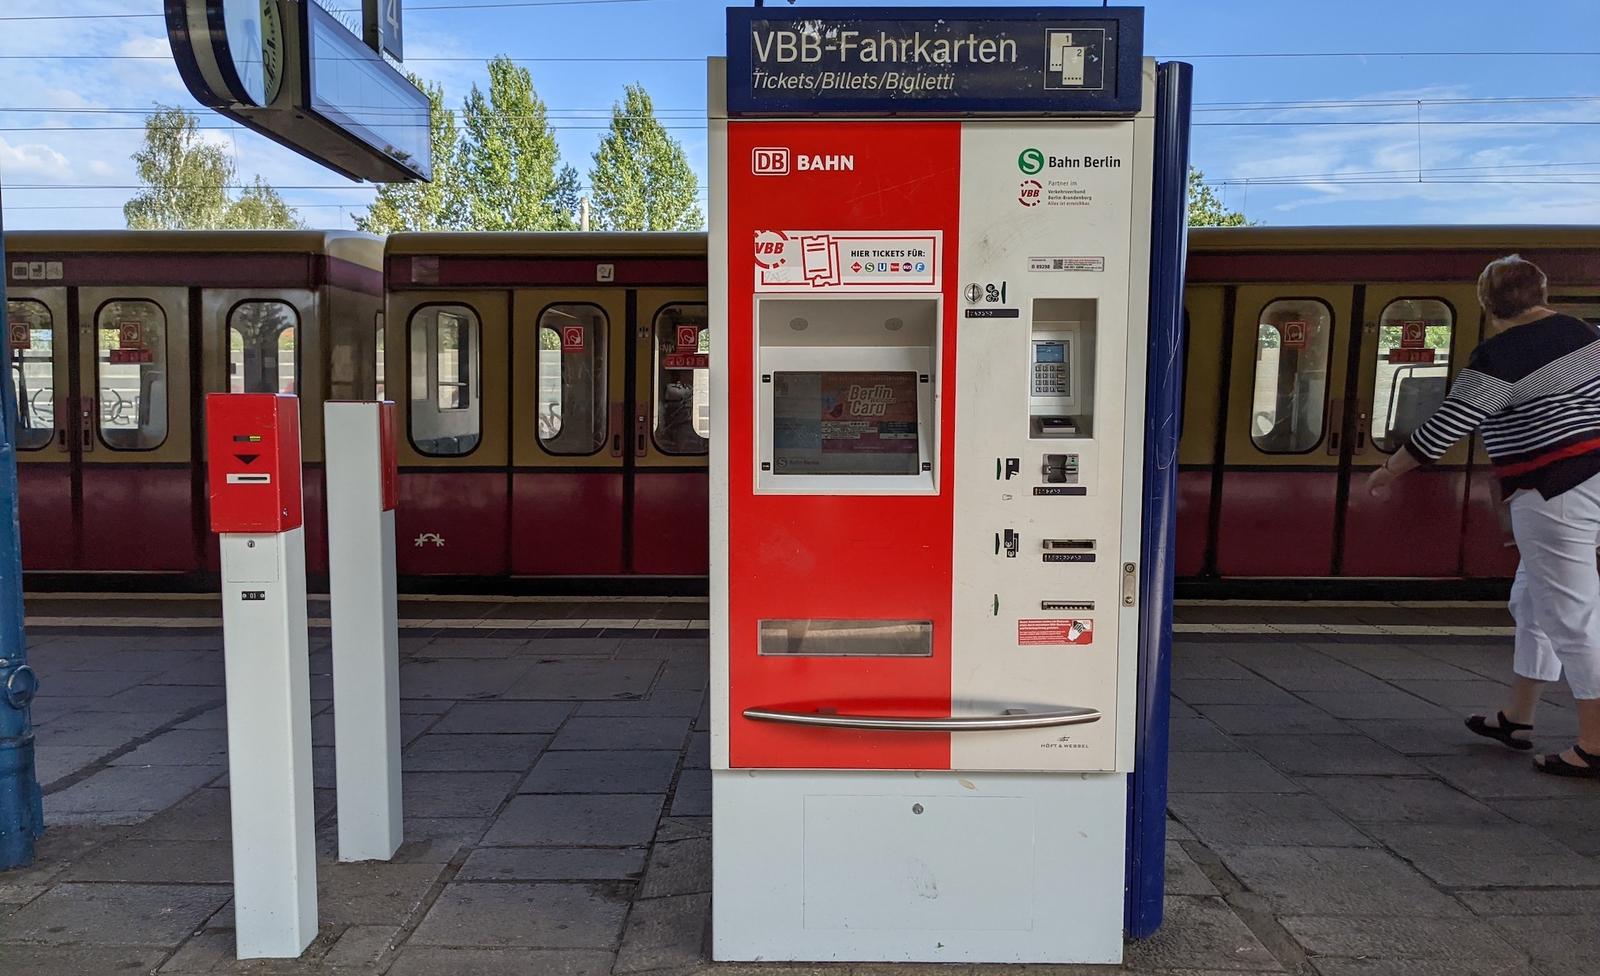 VBB ticket machine